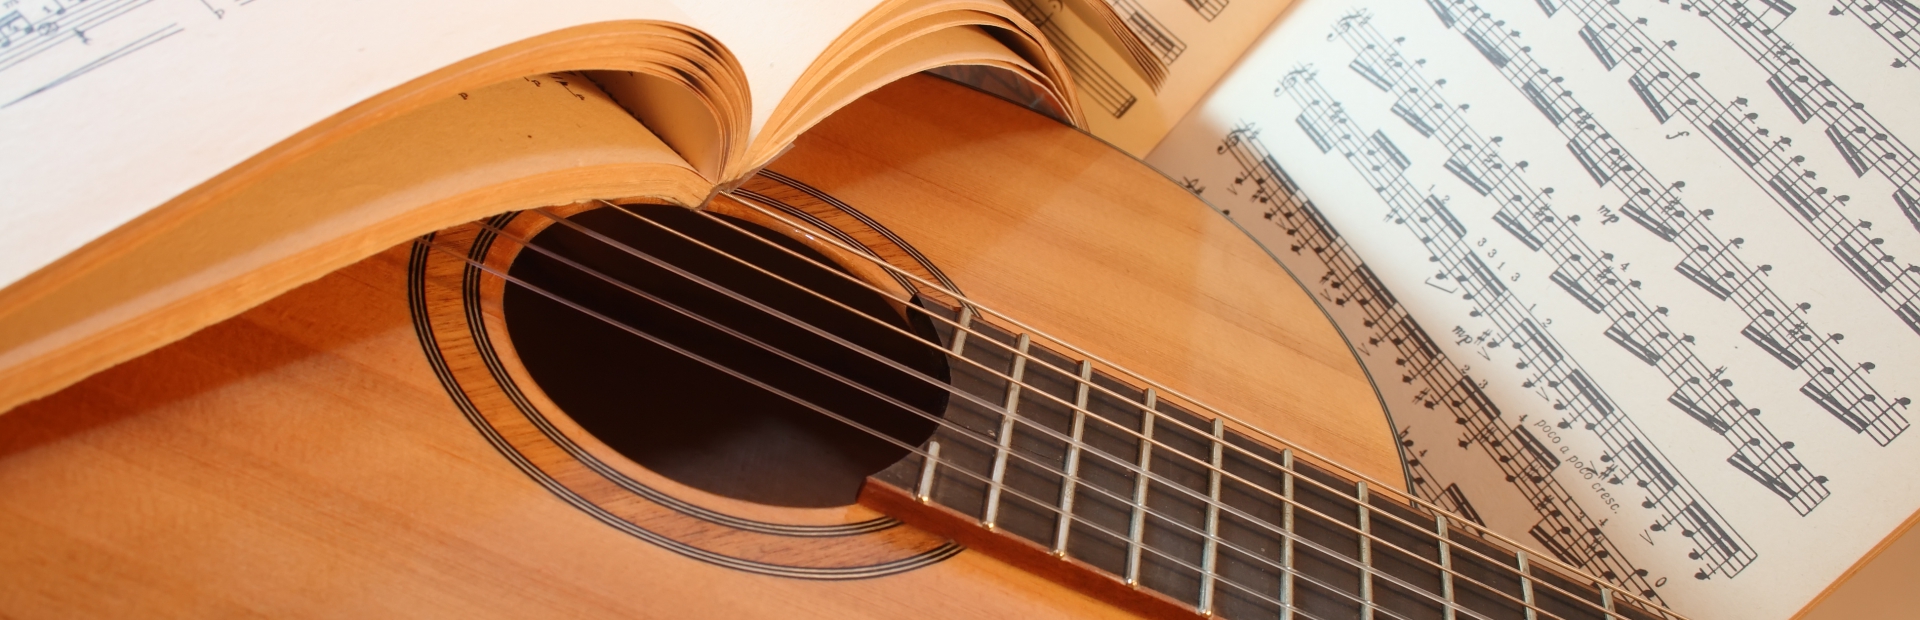 Khoá Học Đàn Guitar - Ukulele